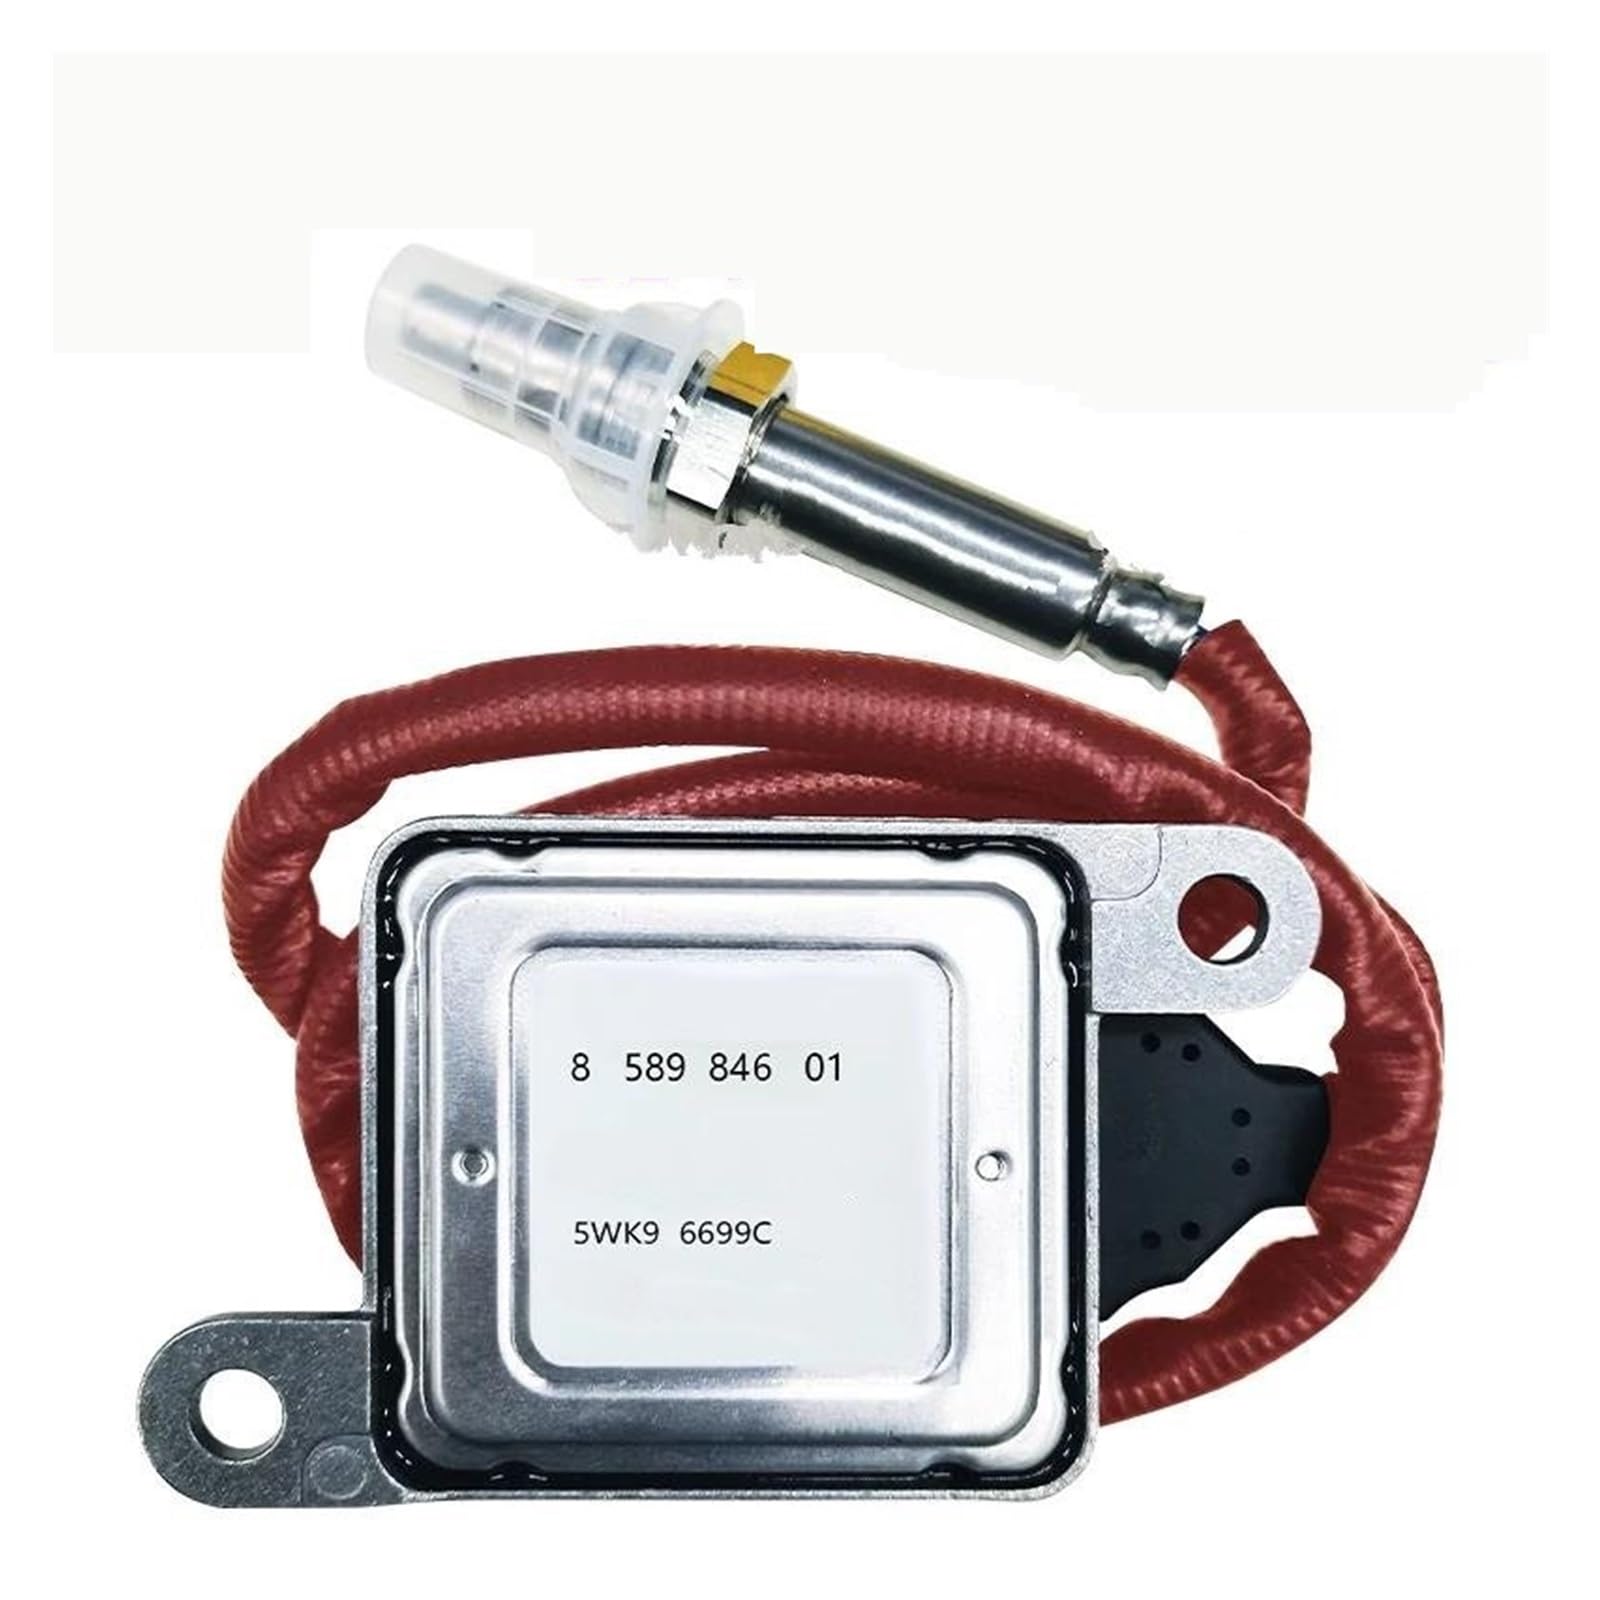 Nox-Sensor Stickstoff-Sauerstoff-Sensor 5WK96699C 13628589846 858984601 Für 335d 535d 535d X5 E70 E90 F30 328d 335d X5 2.0L 3.0L Nox-Sensor Sauerstoffsensor(5WK96699C) von SCUASKJ